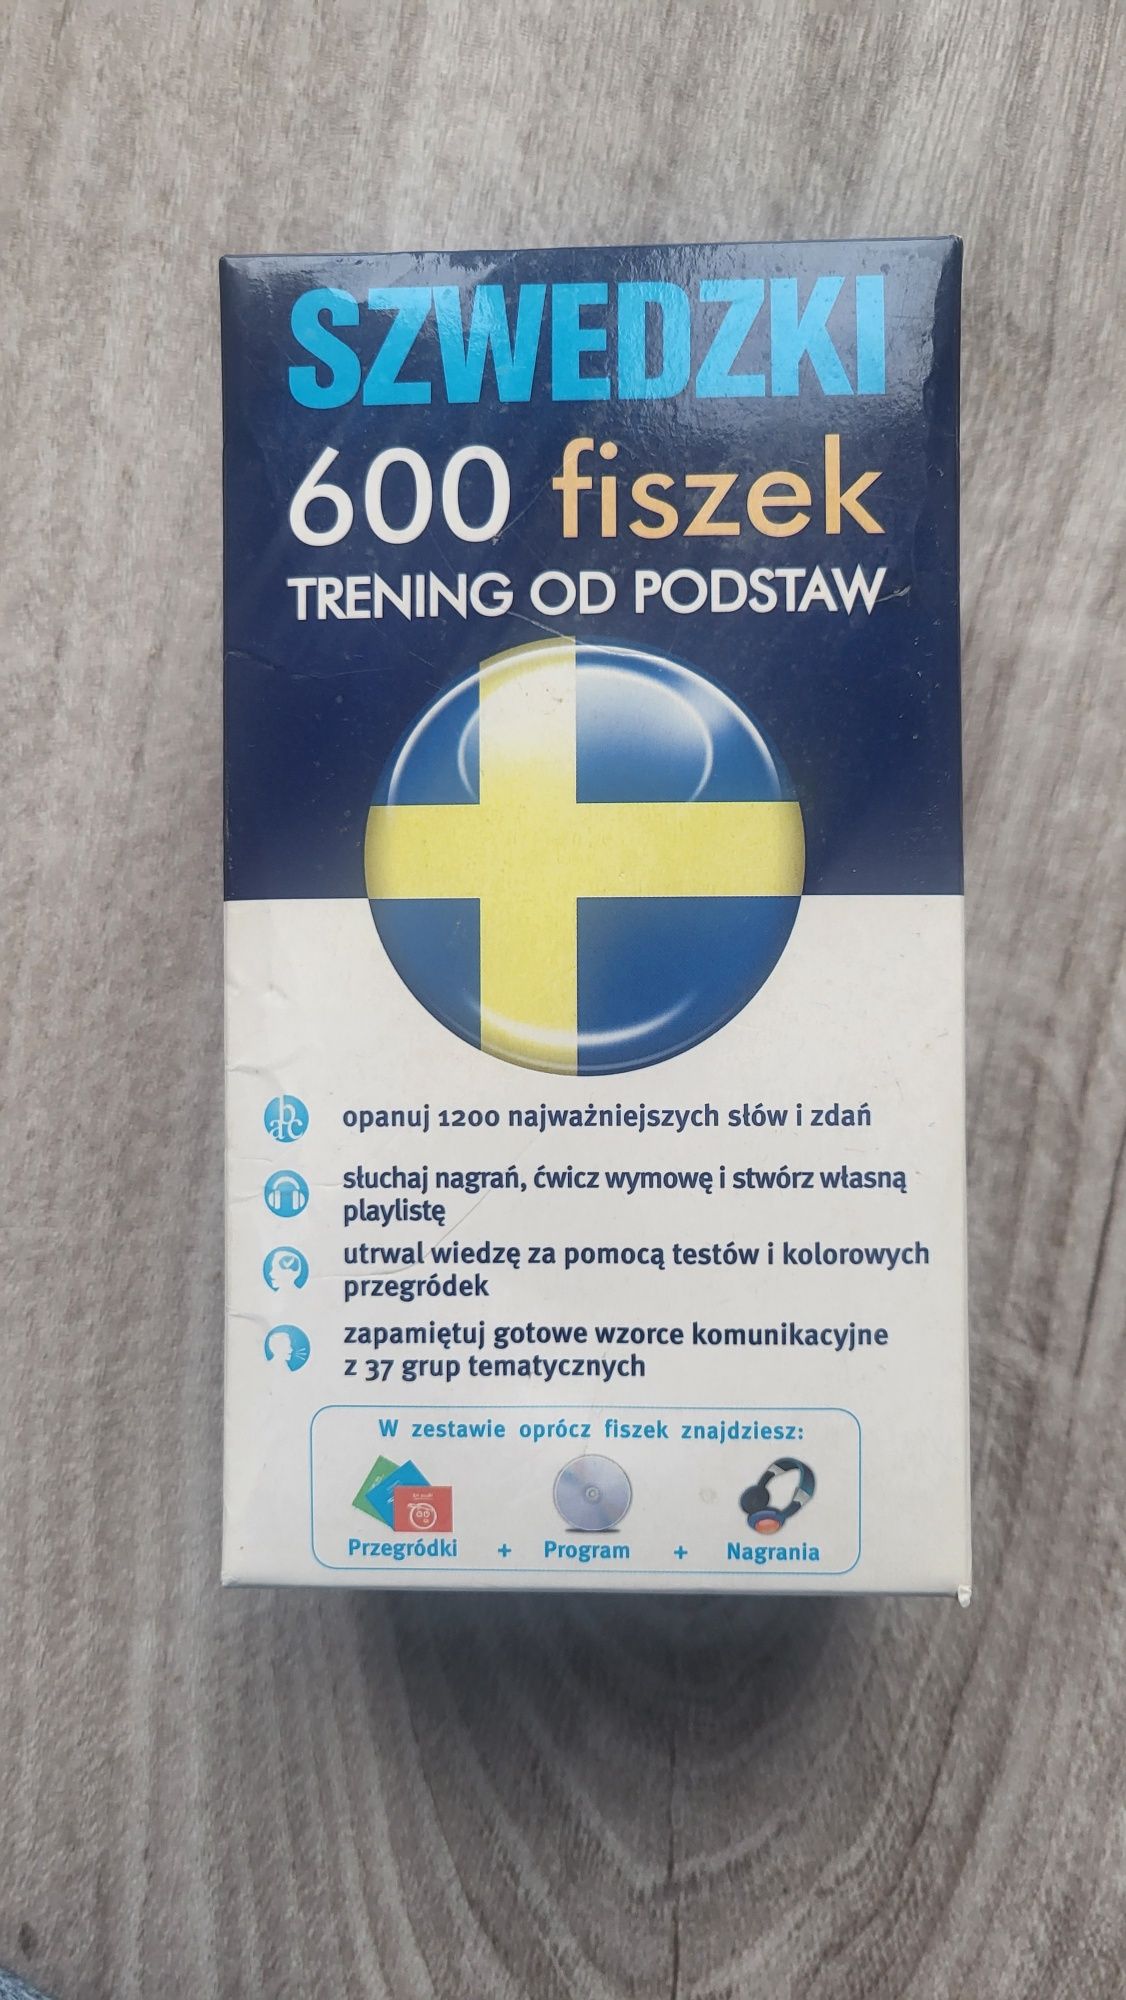 Szwedzki trening od podstaw 600 fiszek edgard